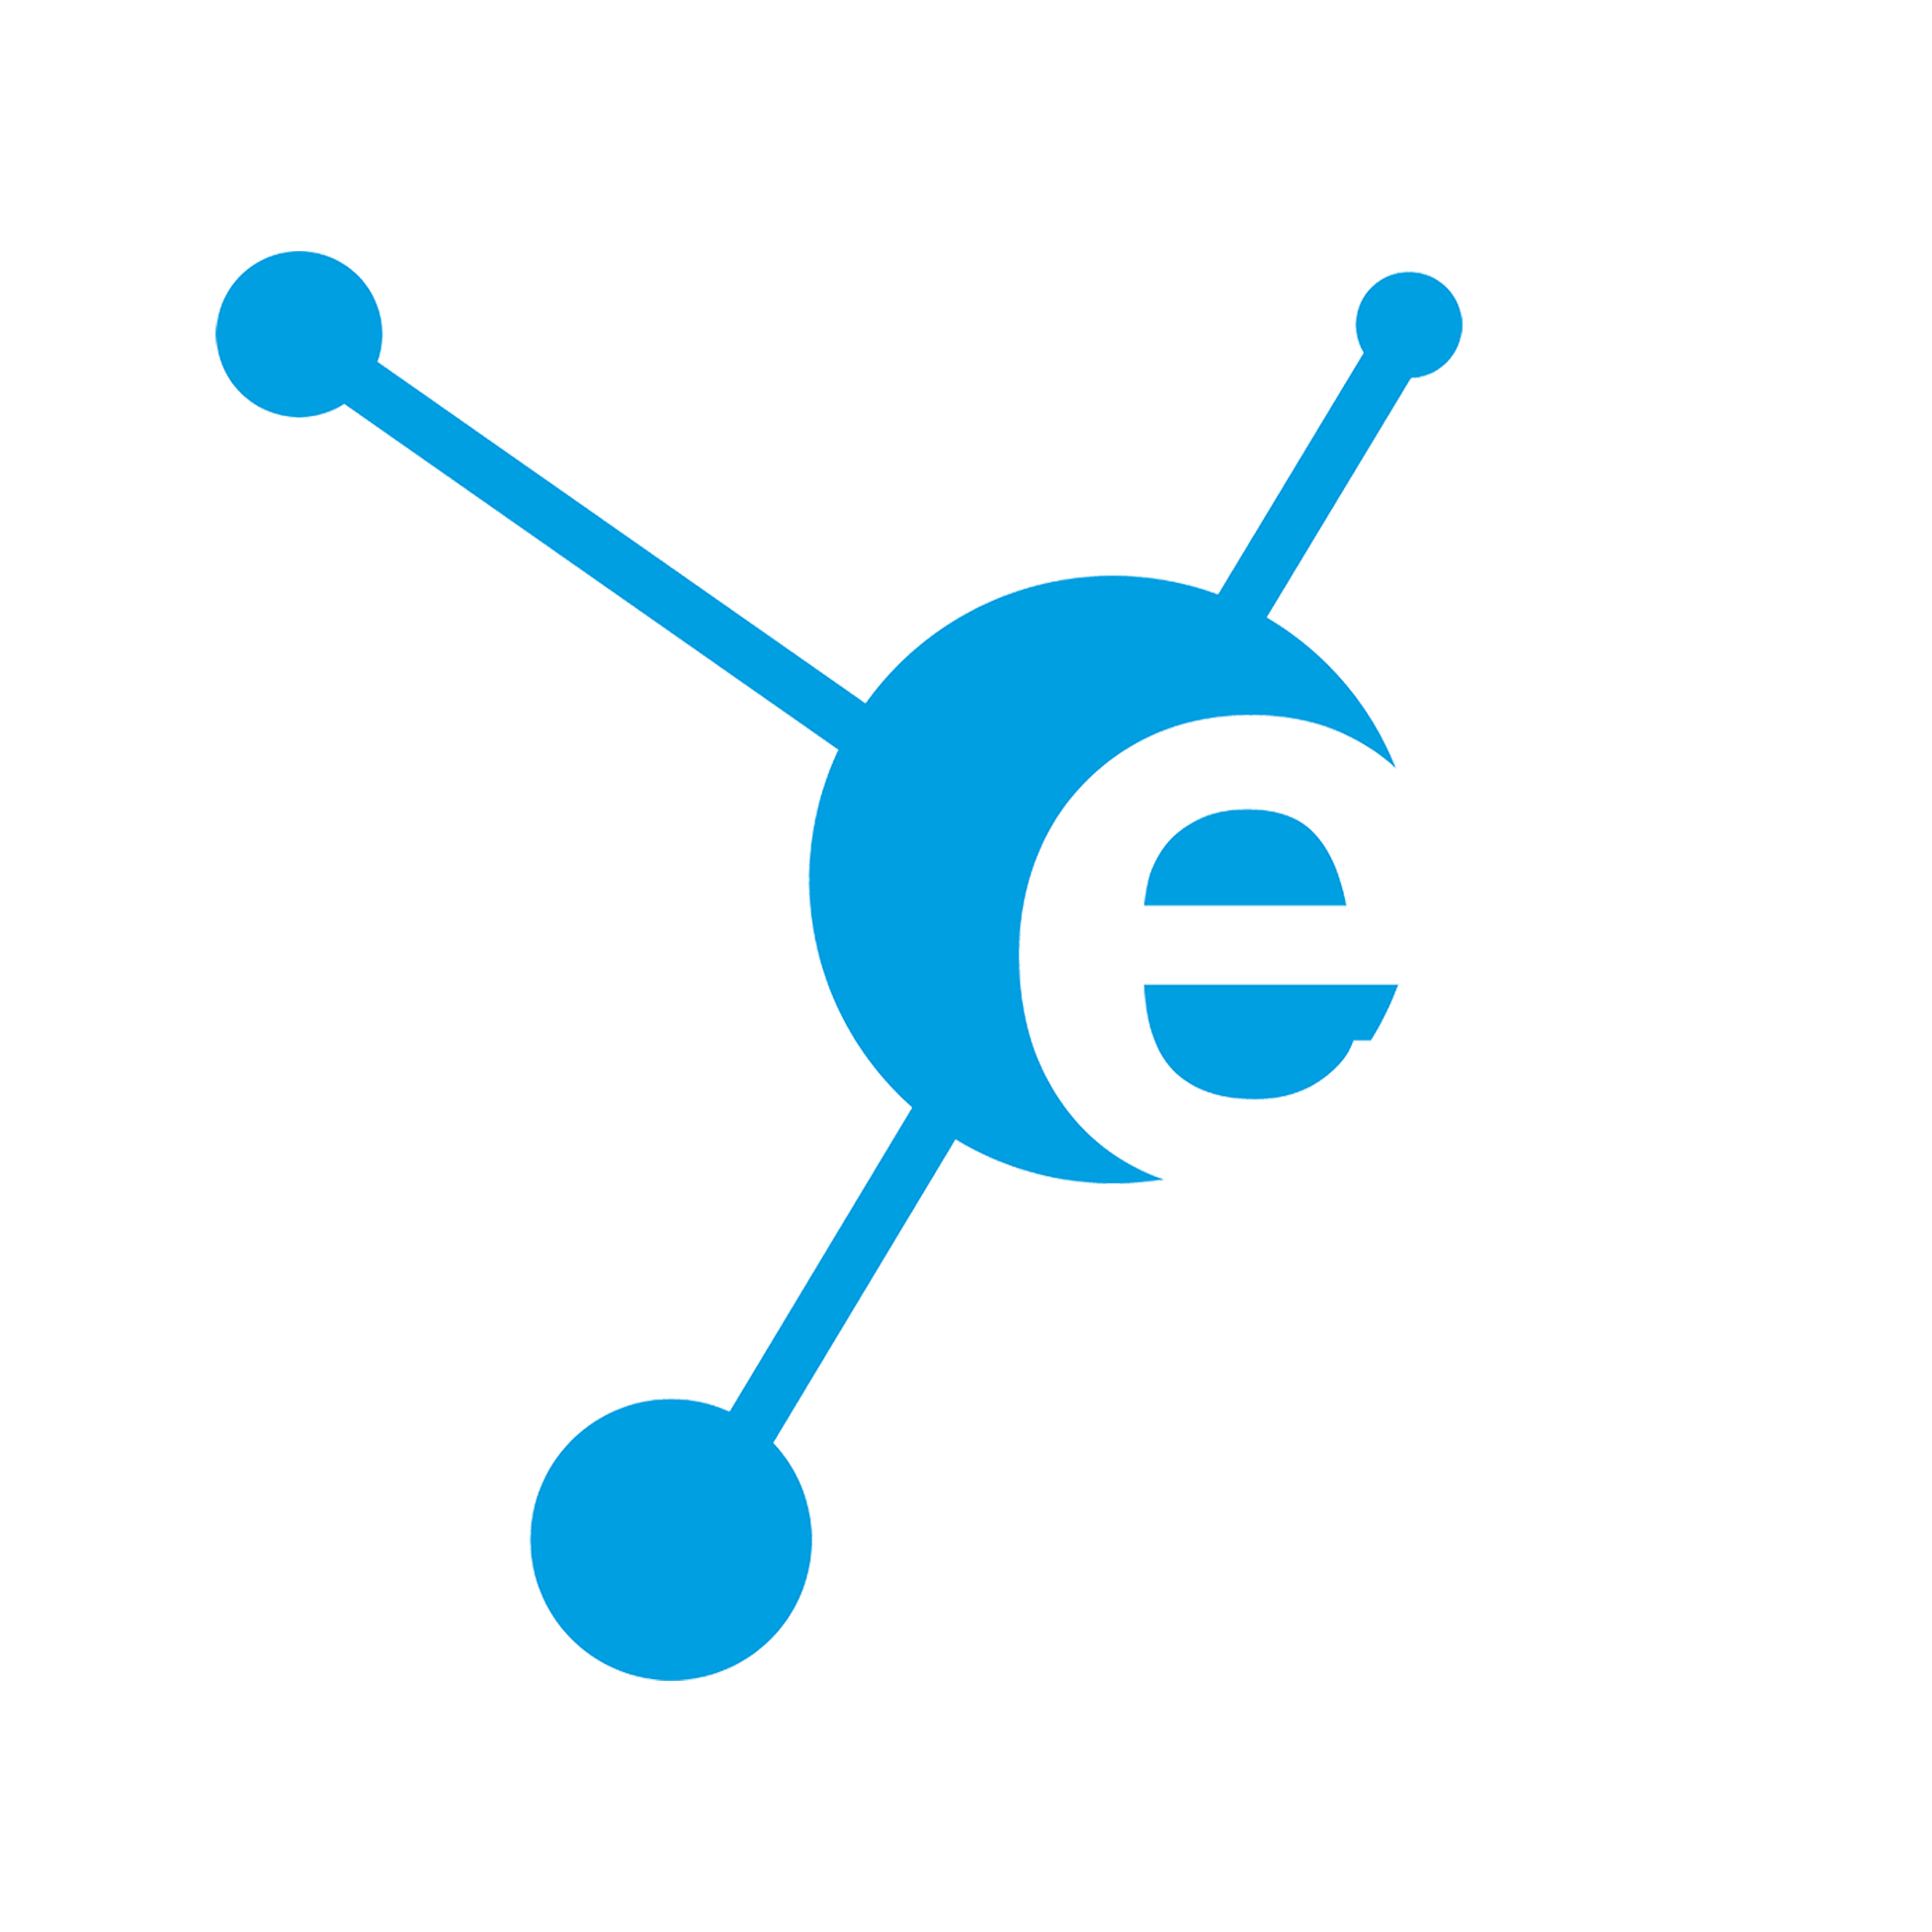 Funktion von eSpeak - Verwenden Sie eSPEAK einfach in Ihrem bestehenden Netzwerk